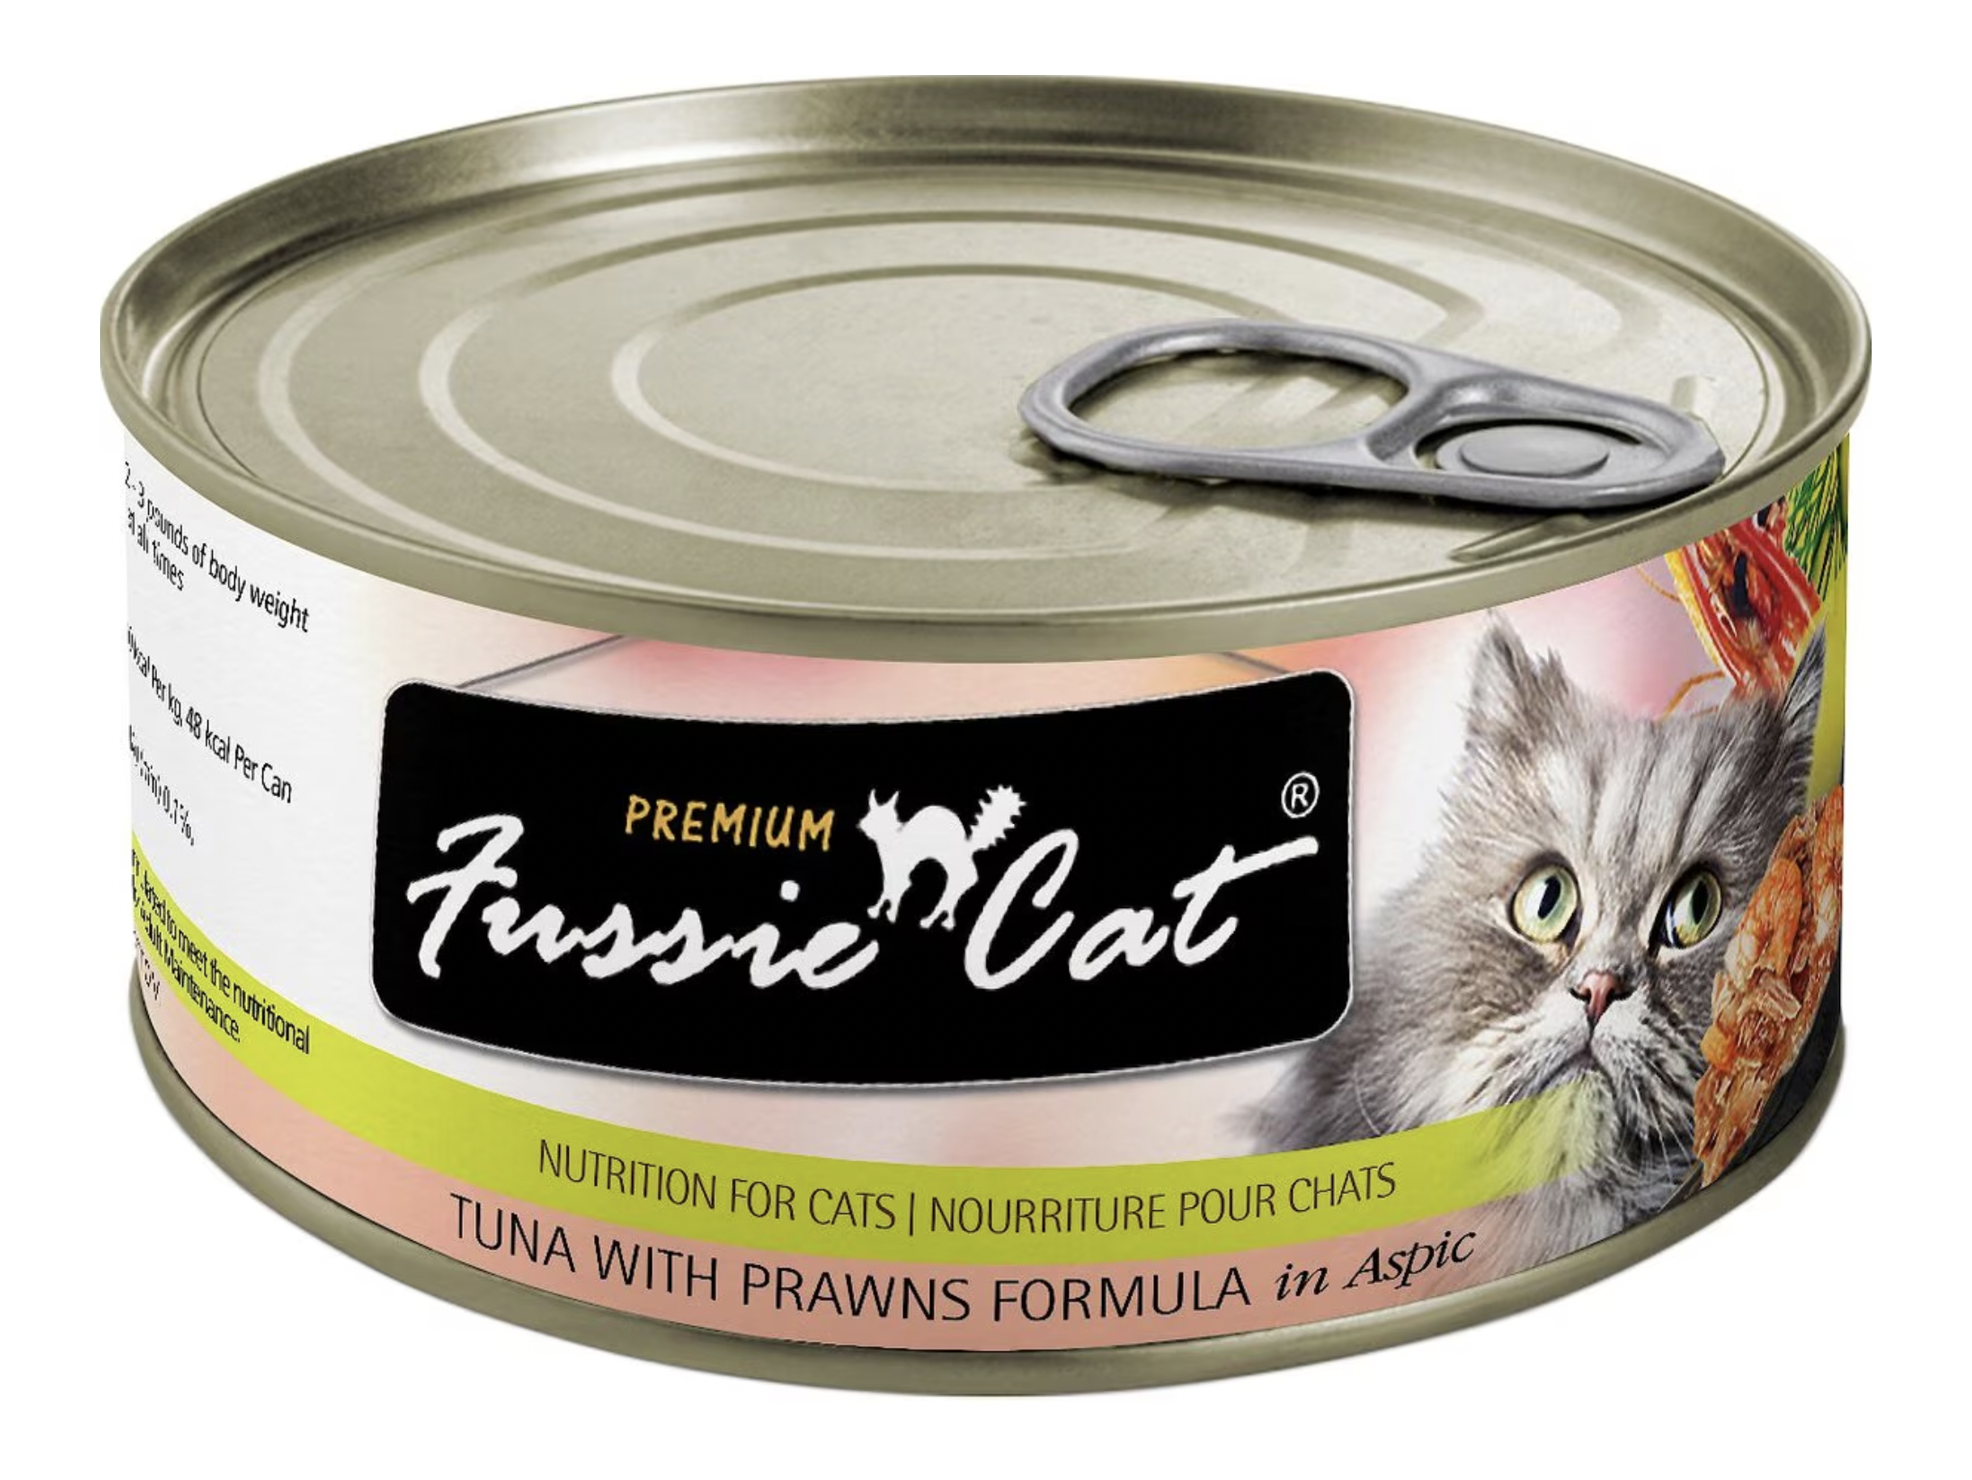 Fussie Cat Premium Tuna with Prawns Formula in Aspic